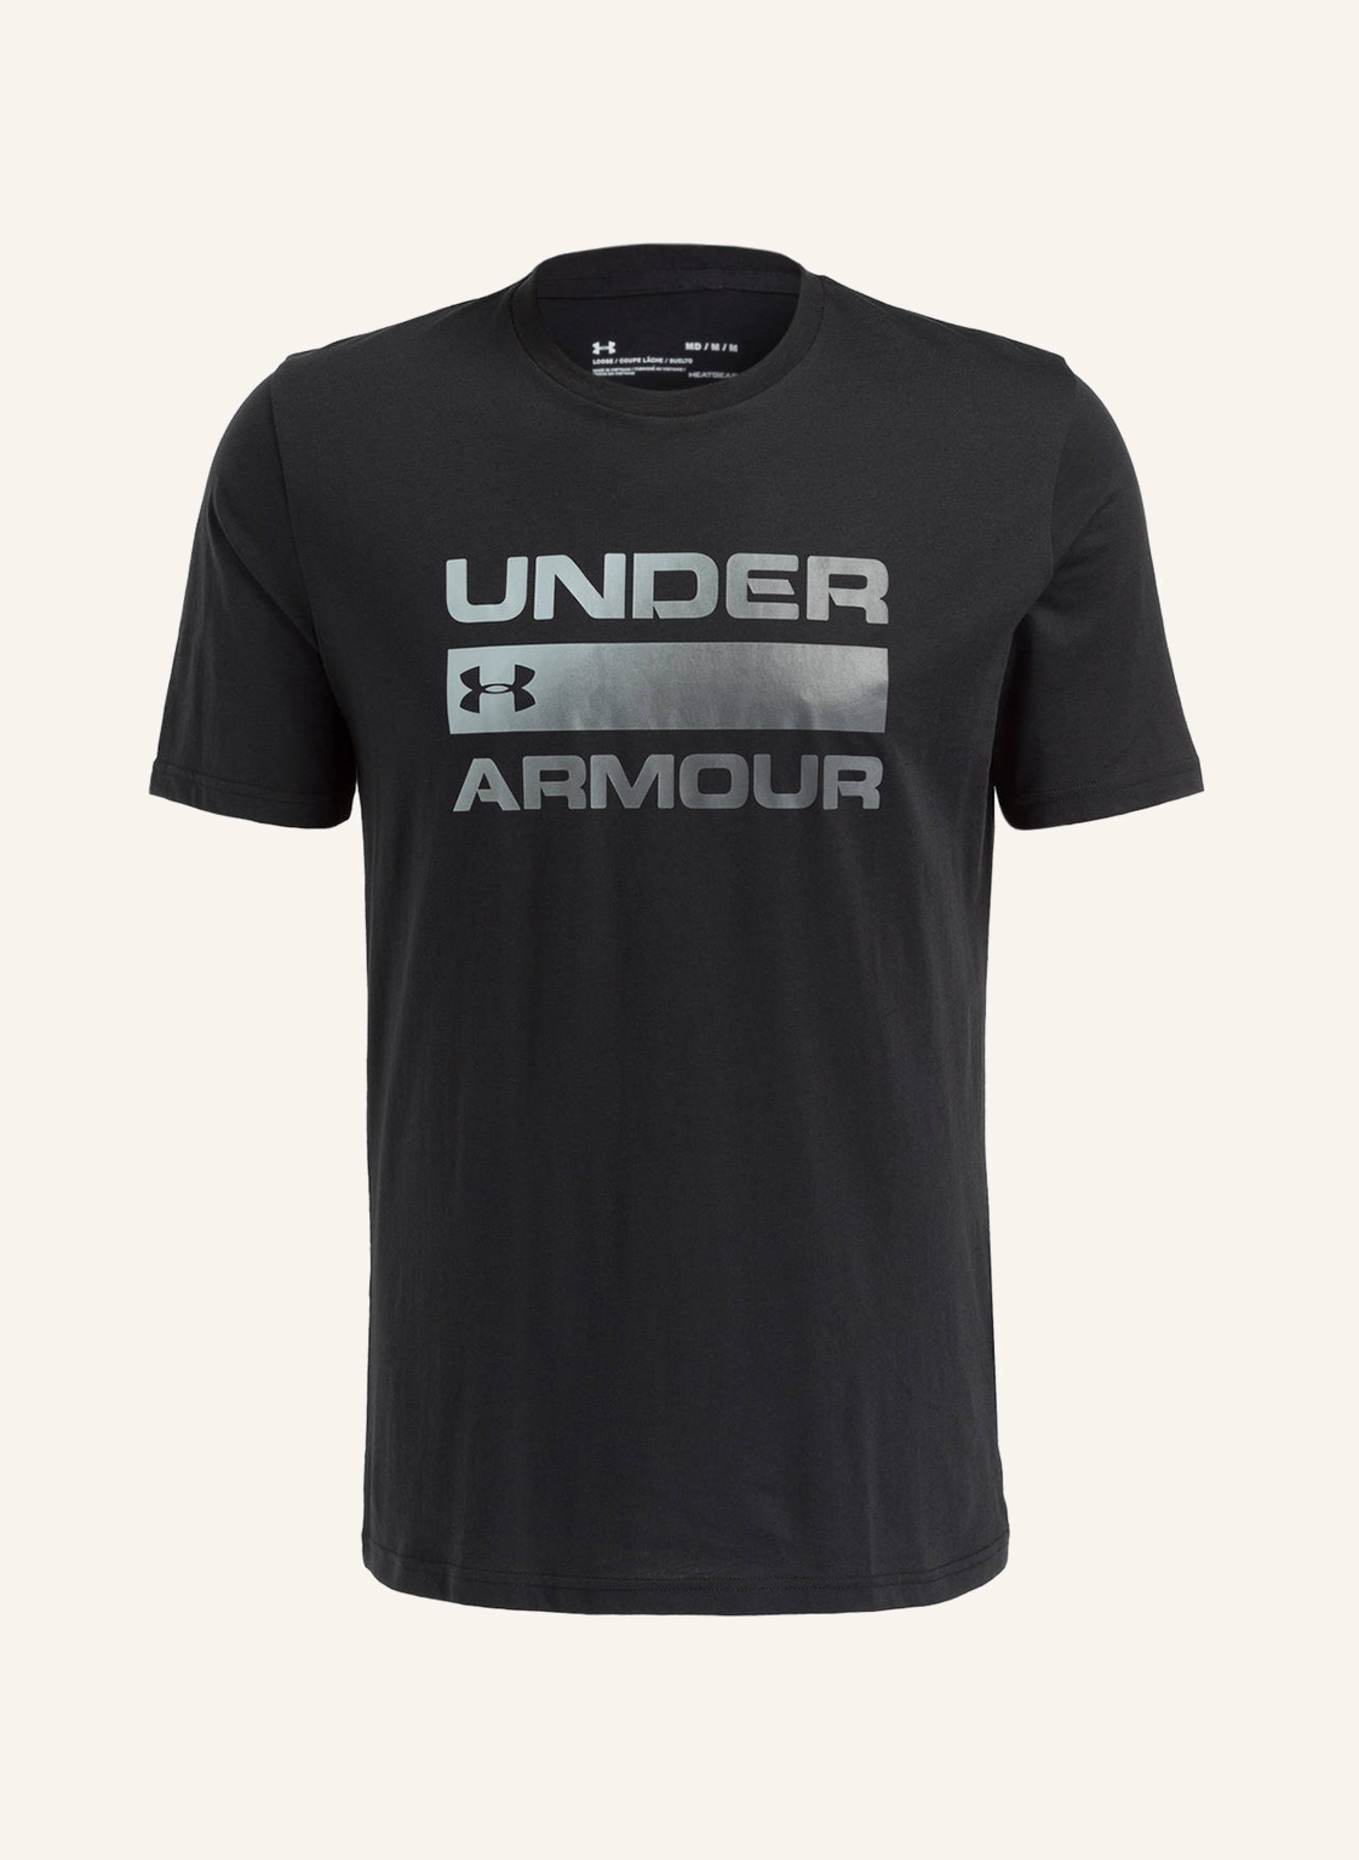 UNDER ARMOUR T-Shirt TEAM ISSUE, Farbe: SCHWARZ (Bild 1)